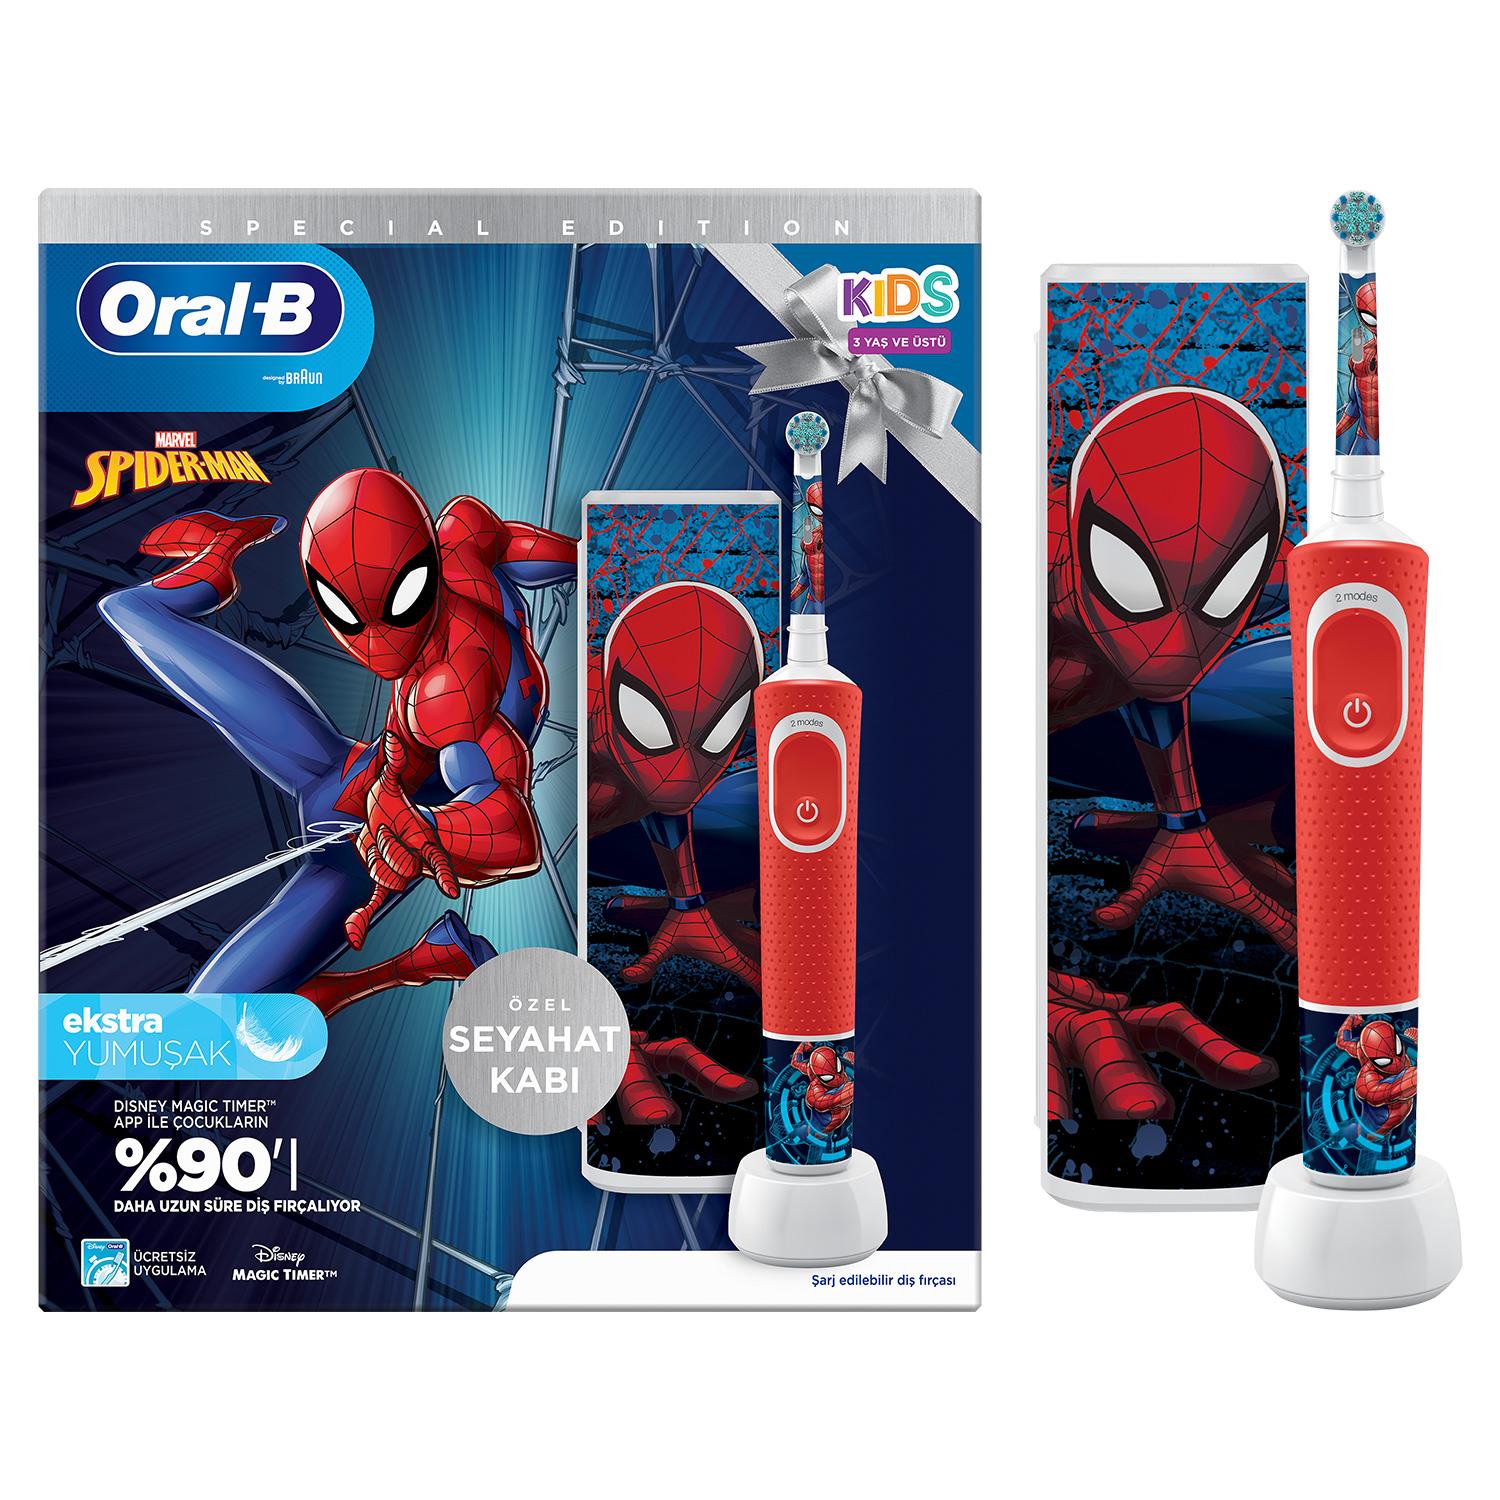 Oral-B D100 Vitality Spiderman Özel Seri Çocuklar İçin Ekstra Yumuşak Şarj Edilebilir Diş Fırçası + Seyahat Kabı